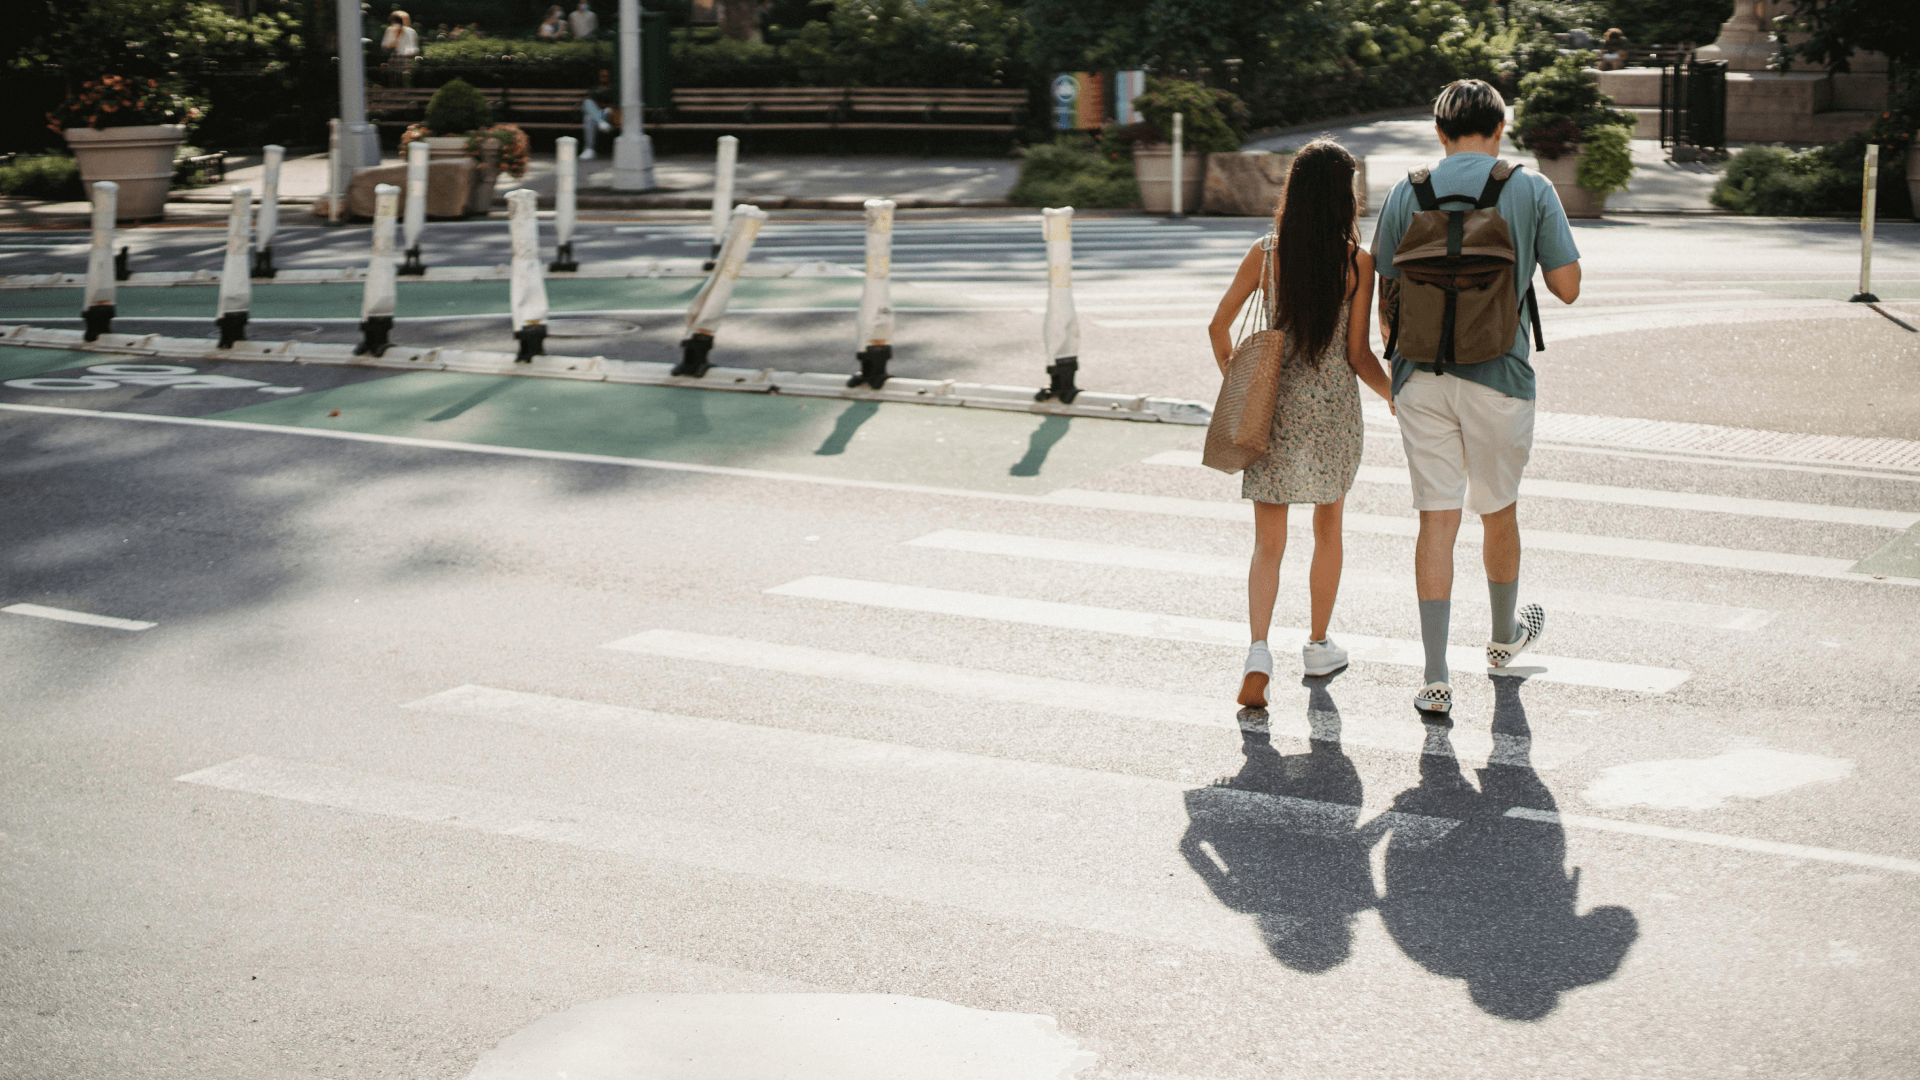 A couple walking across a street on a crosswalk